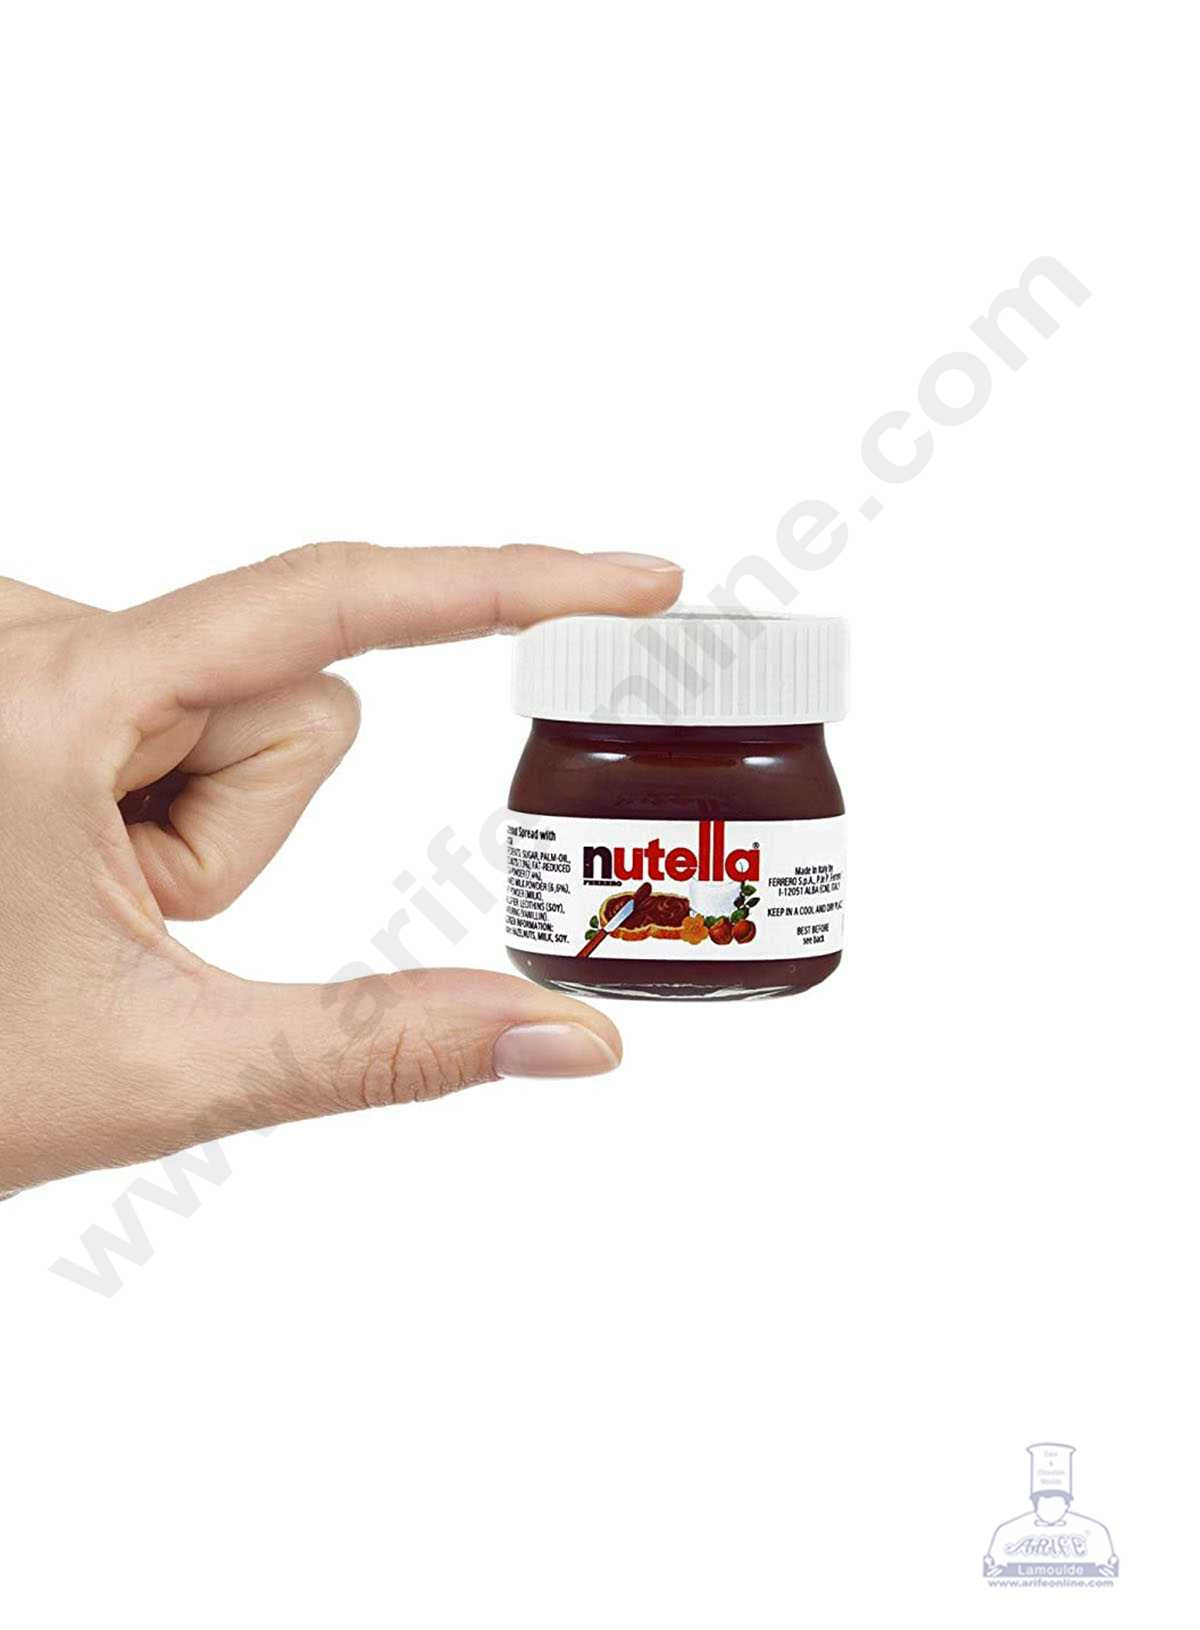 Mini Nutella 25 g is halal suitable